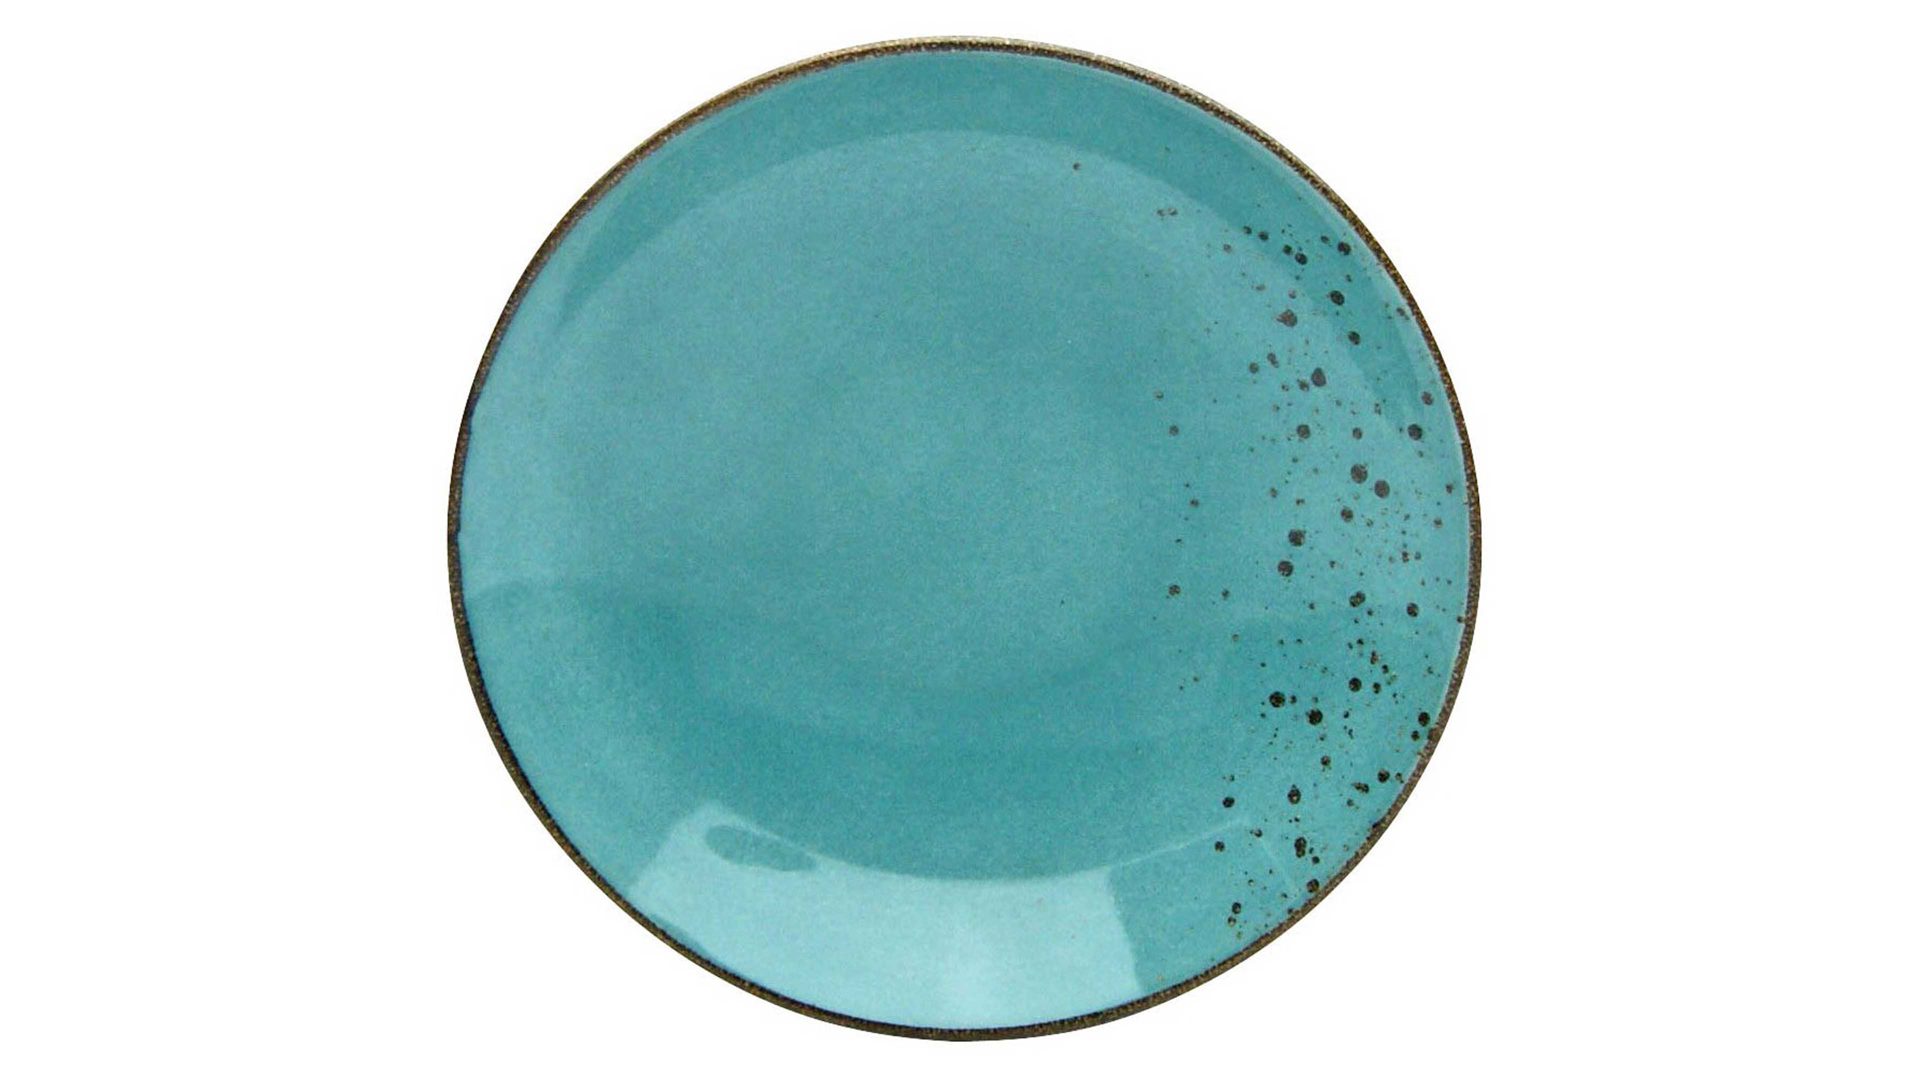 Essteller Creatable aus Steinzeug in Hellblau CREATABLE Nature Collection – Essteller wasserblaues Steinzeug – Durchmesser ca. 27 cm